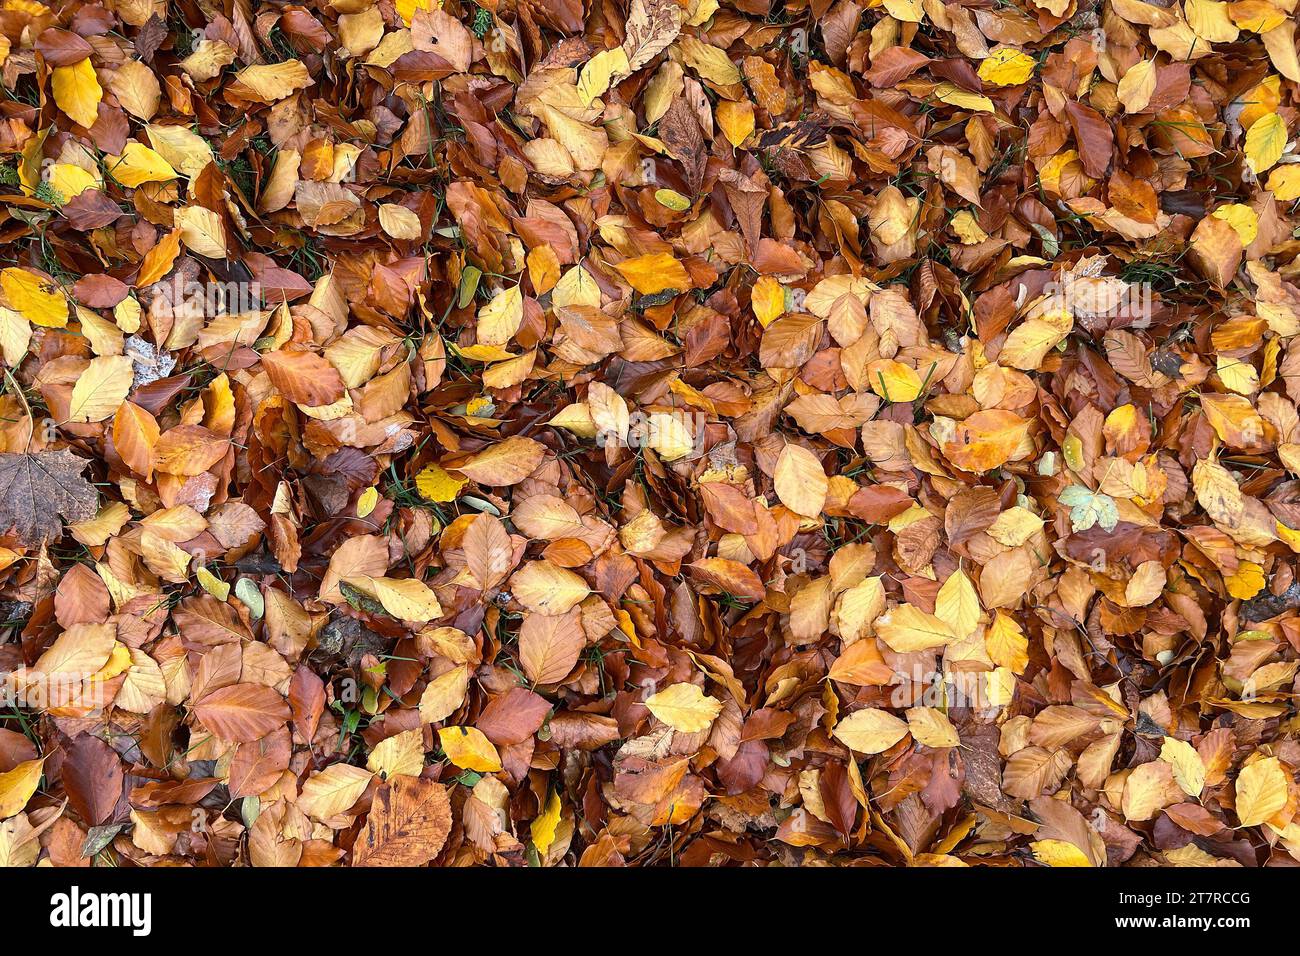 Herbstlaub-herabgelfallene Blaetter bedecken den Boden. *** Le foglie cadute coprono il terreno credito: Imago/Alamy Live News Foto Stock